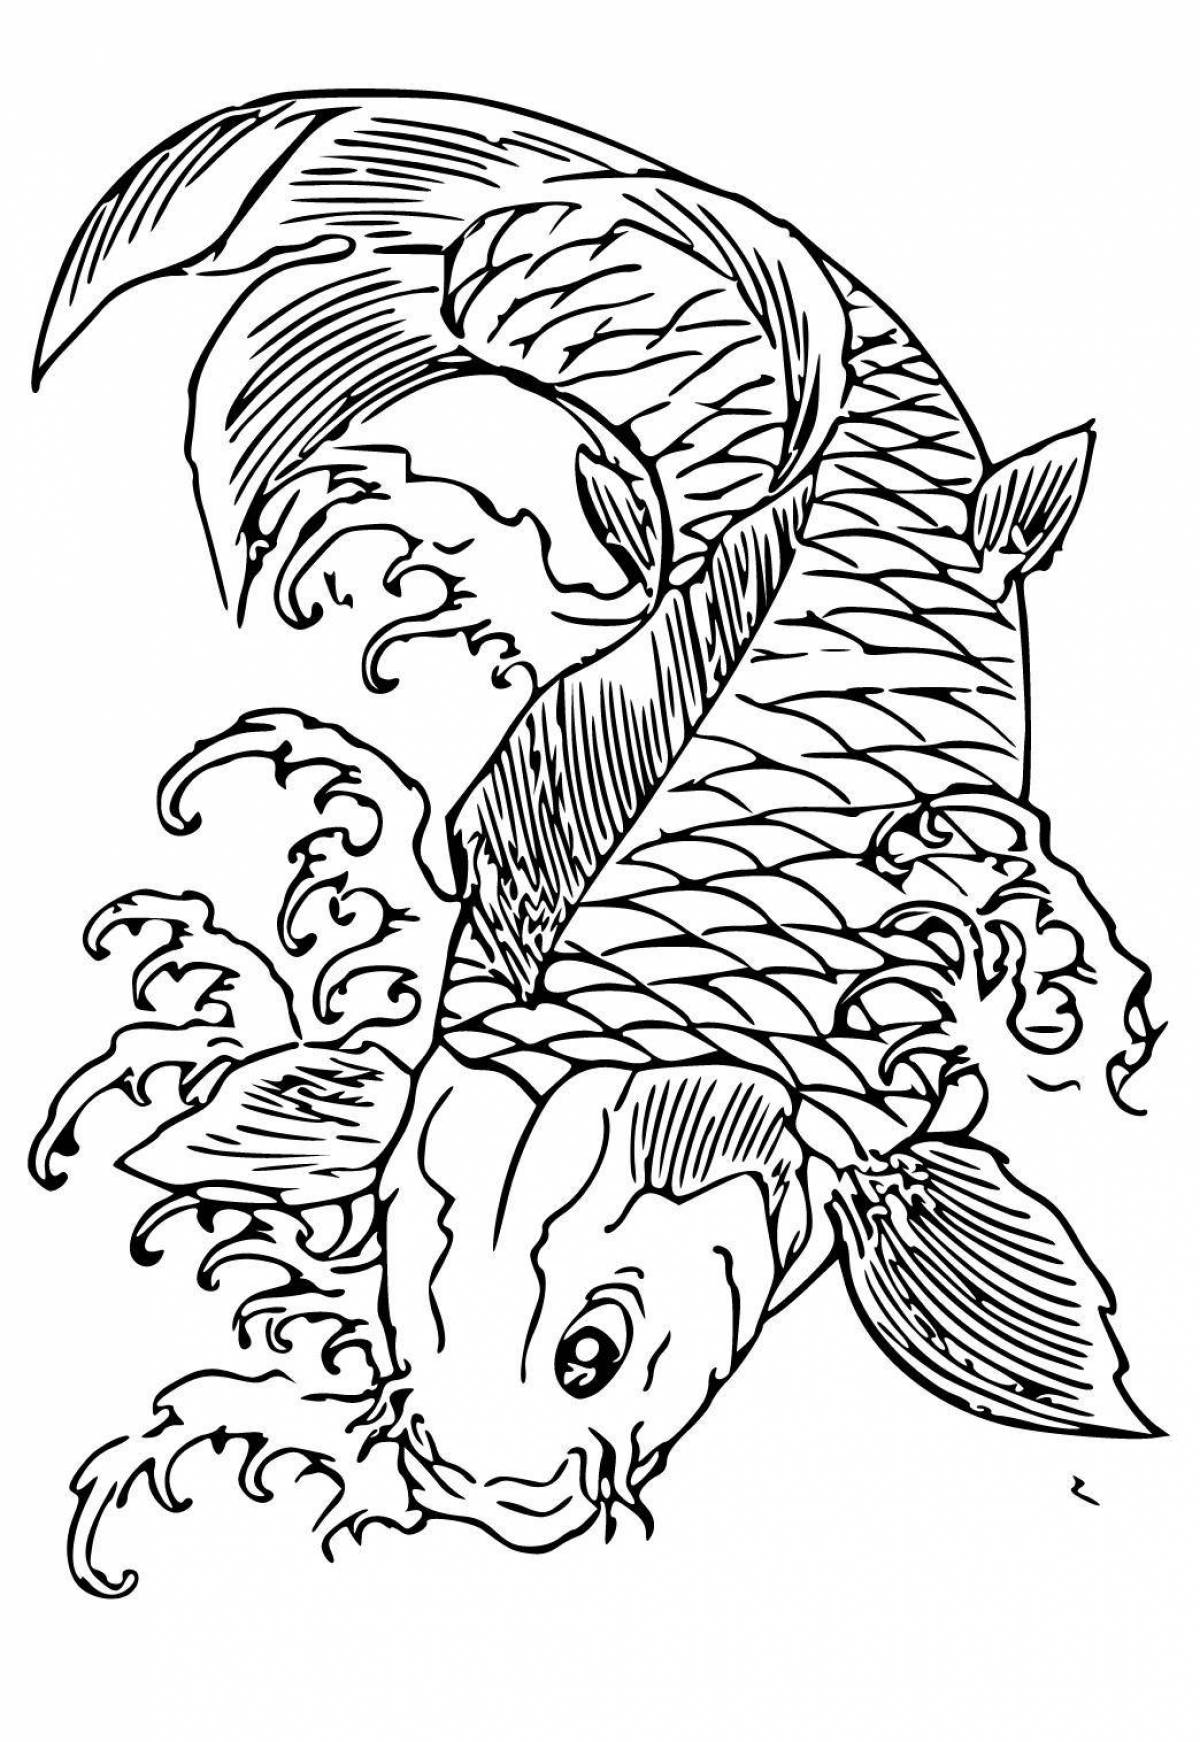 Adorable mandarin fish coloring page